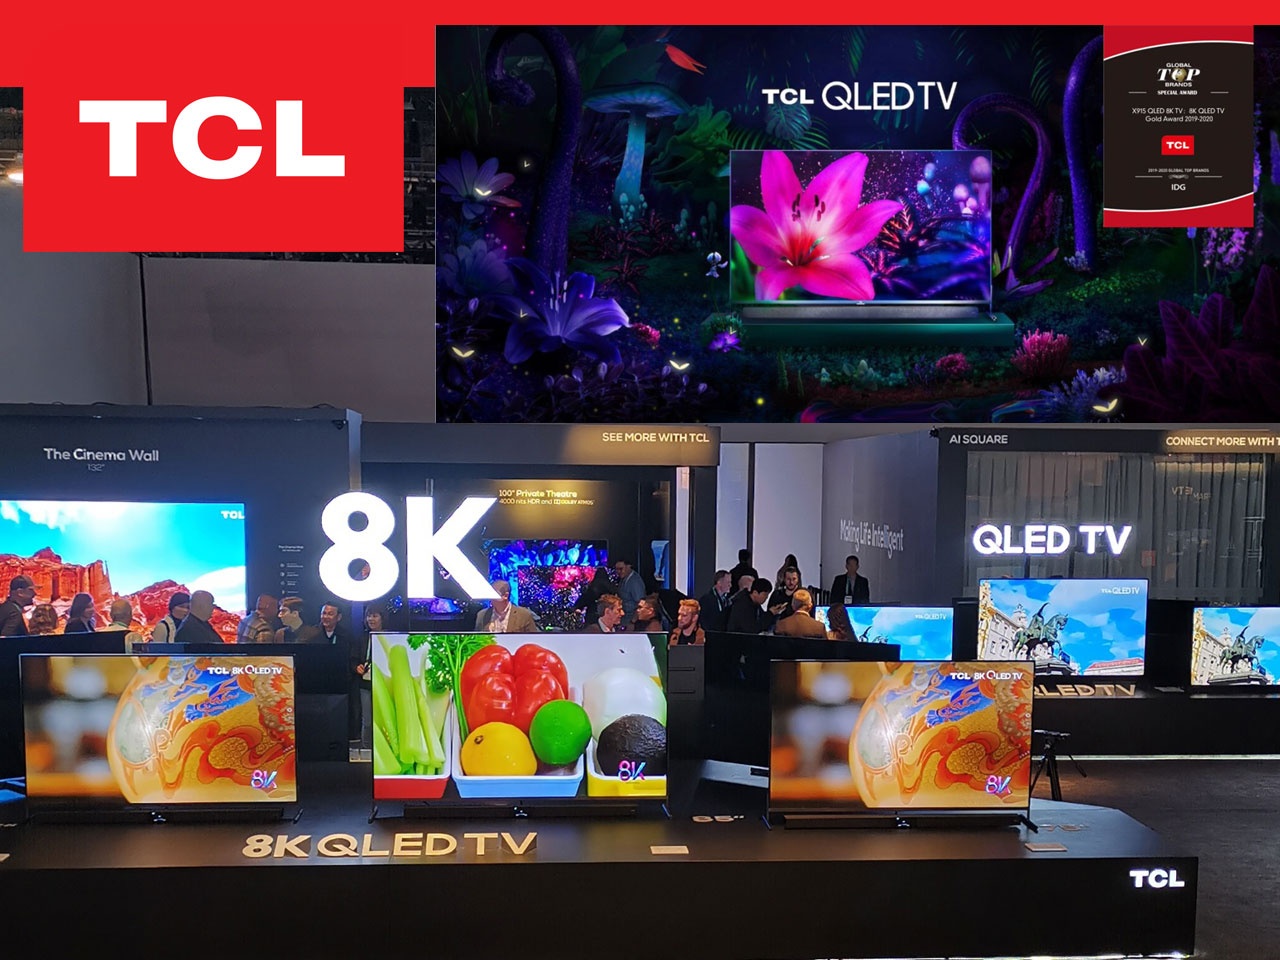 TCL couronné du prix « 8K QLED TV Gold Award » au CES 2020